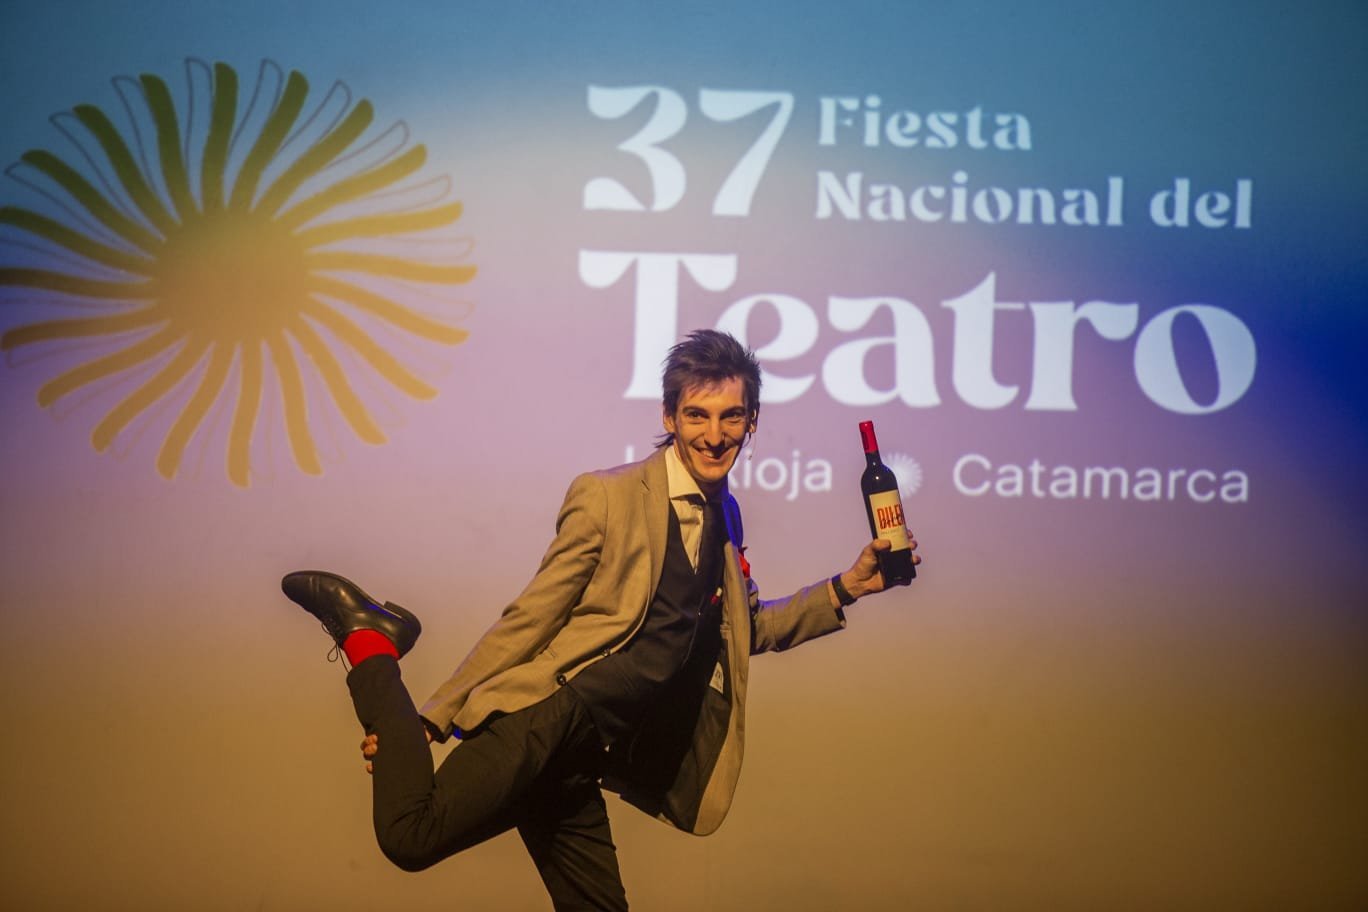 Nicolás Gentile: “Estar en el cierre de la Fiesta Nacional del Teatro fue muy significativo para mi”